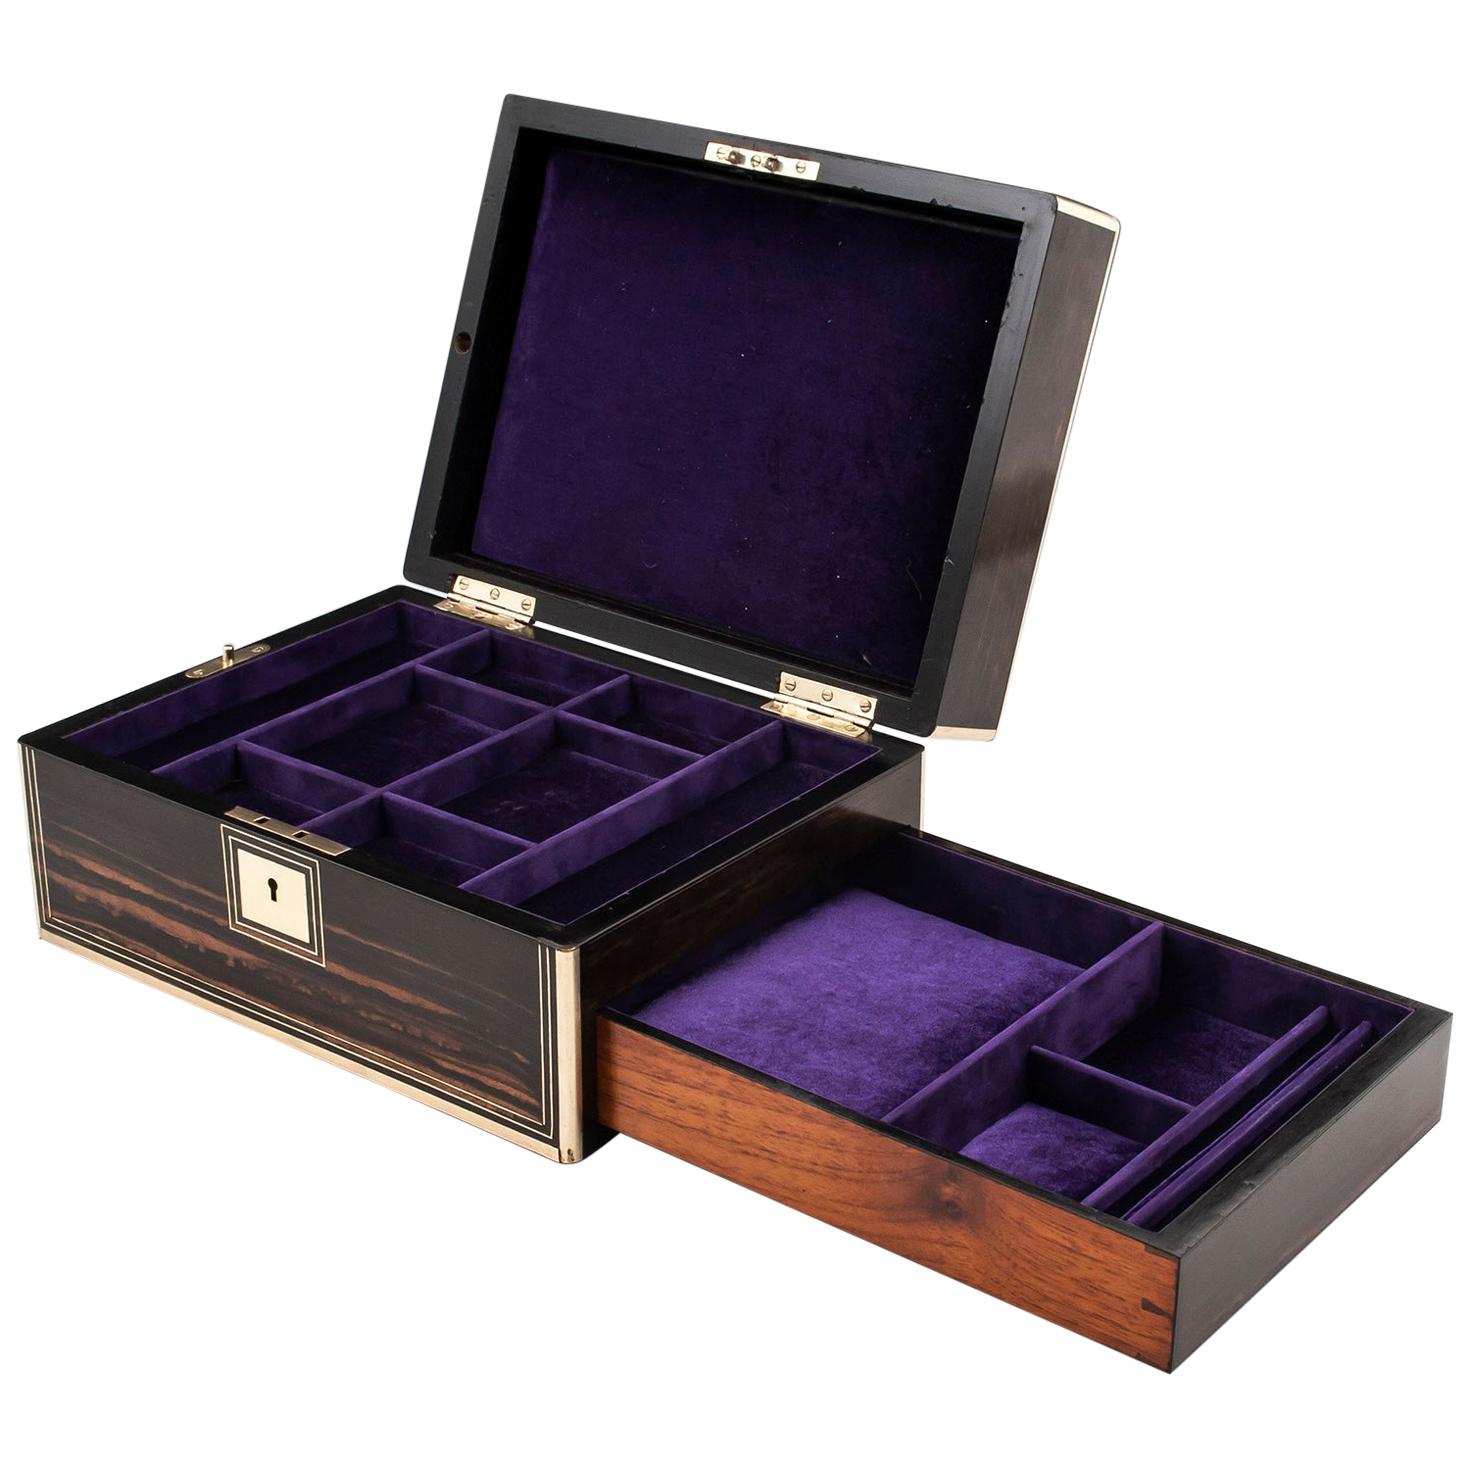 Antique Coromandel and Brass Velvet Lined Jewelry Box 19th Century